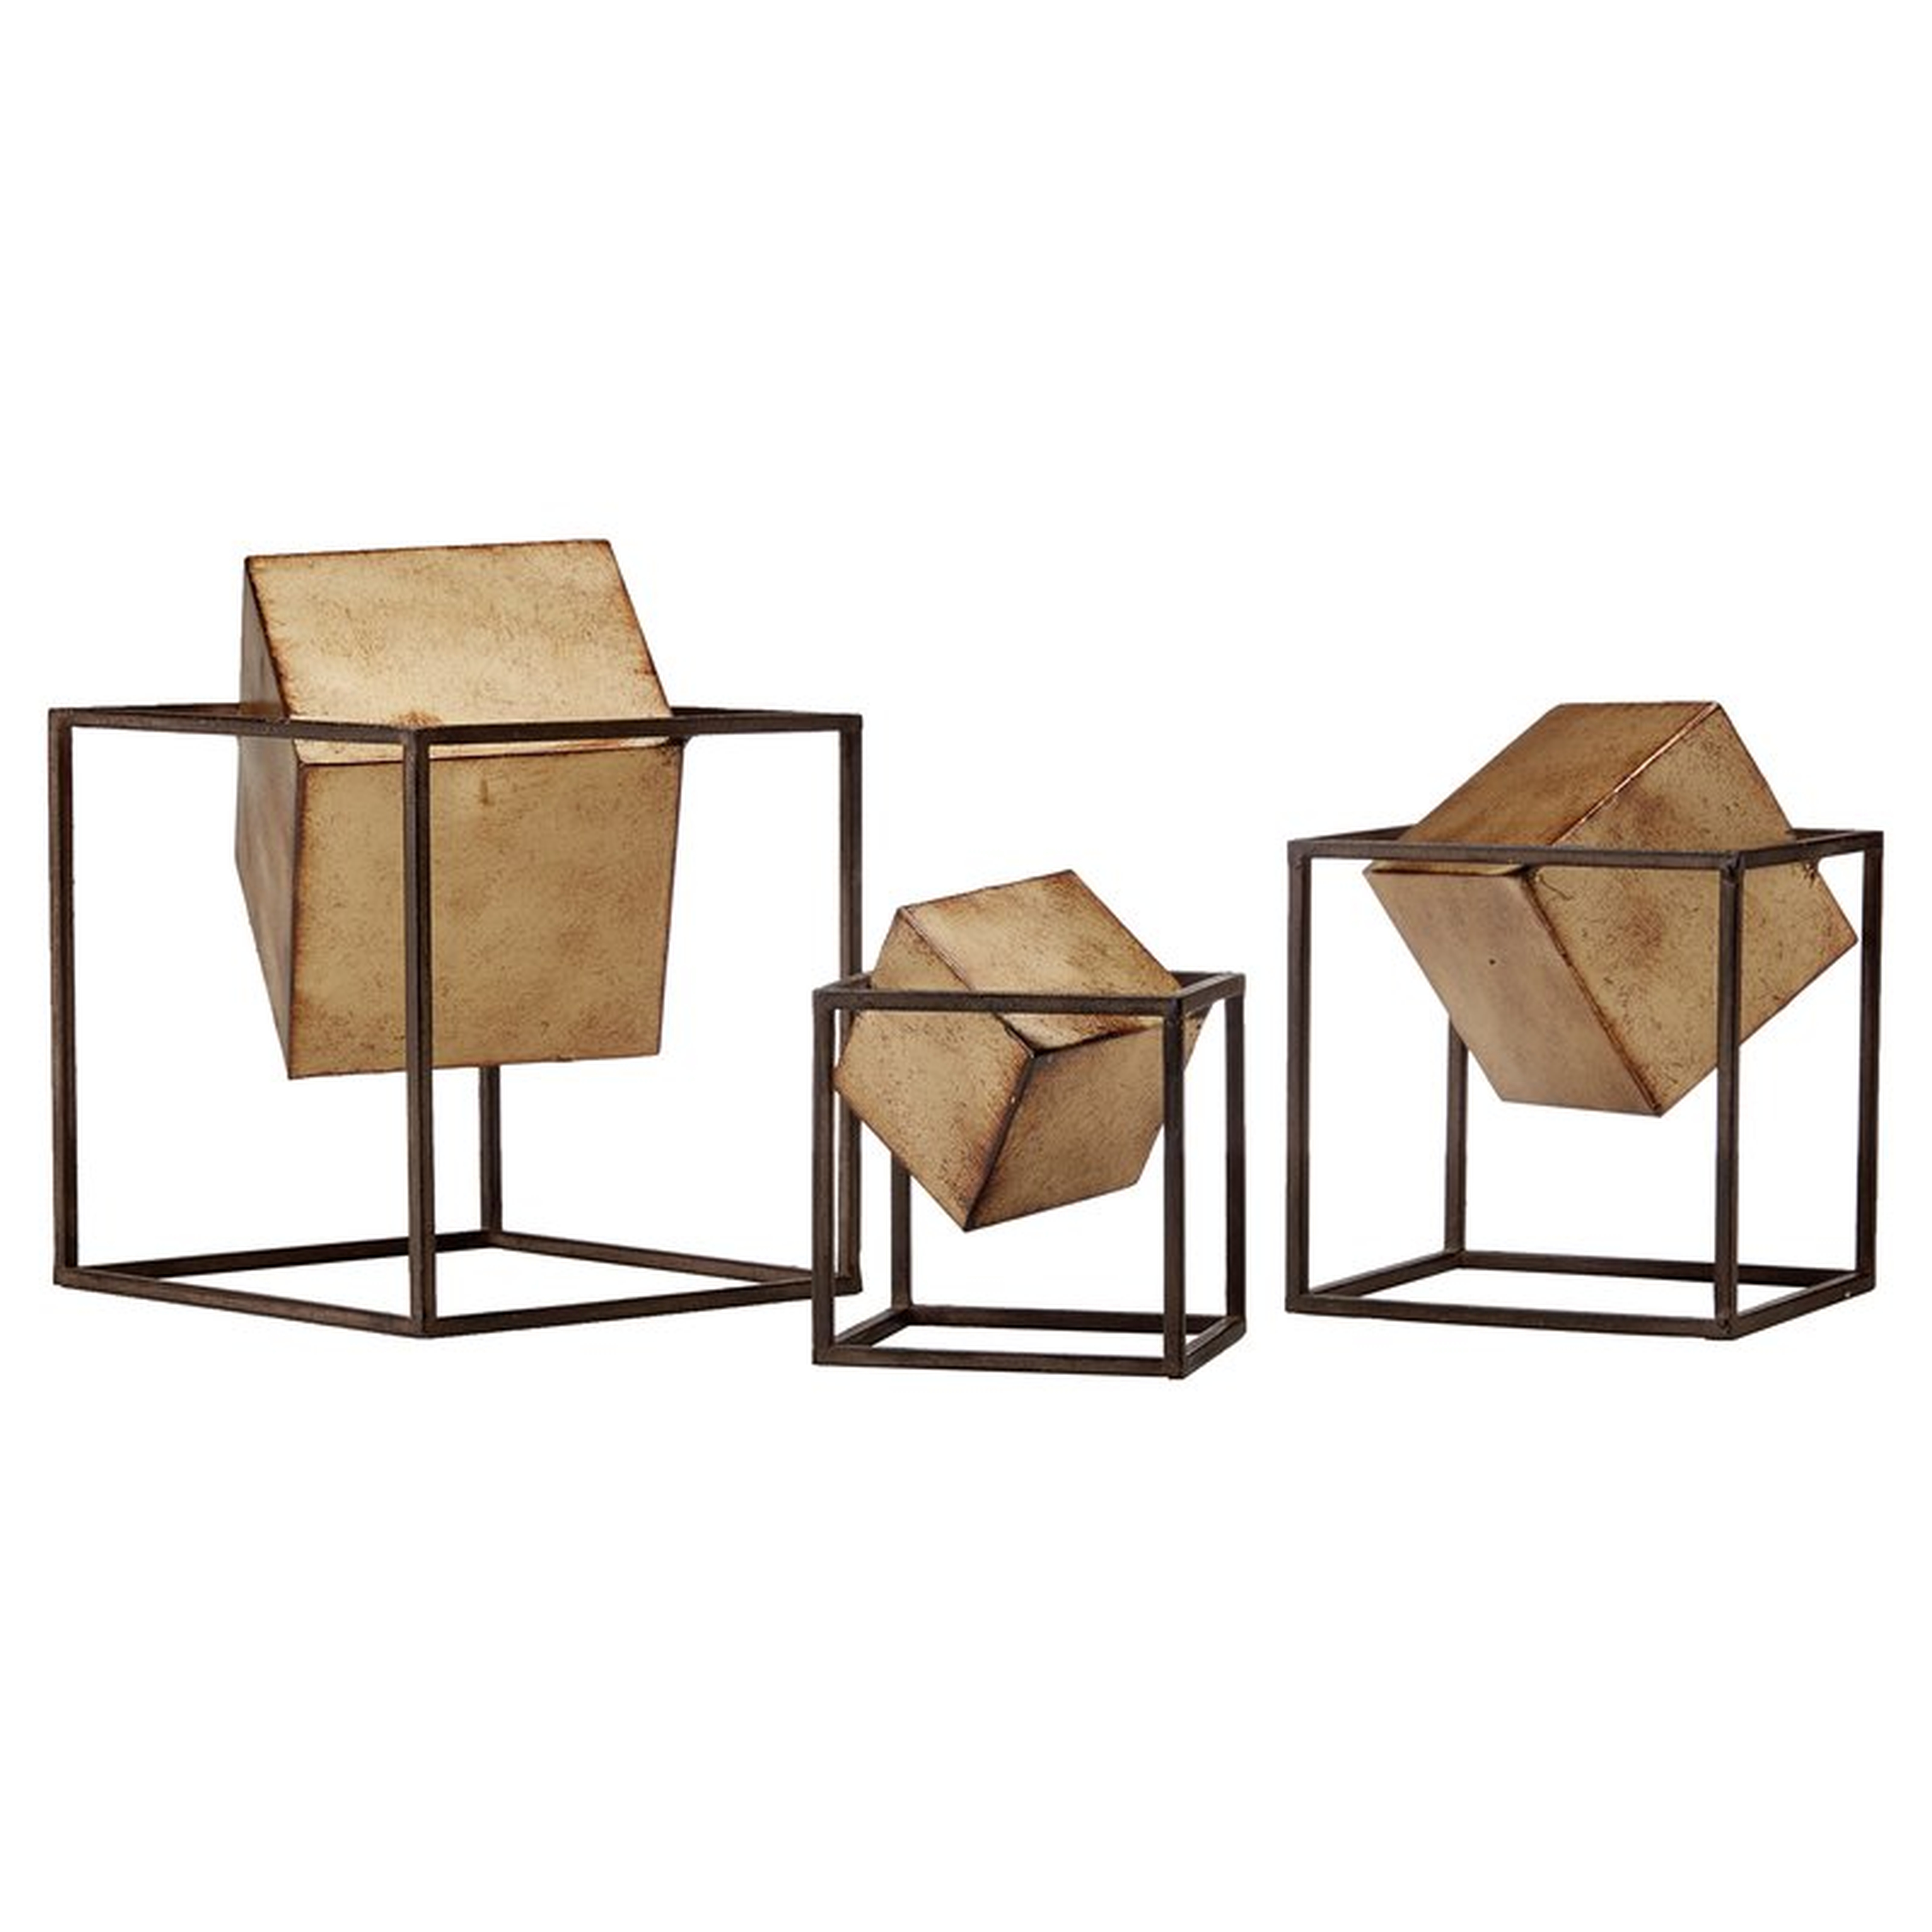 3 Piece Gold Cube Sculpture Set - Wayfair